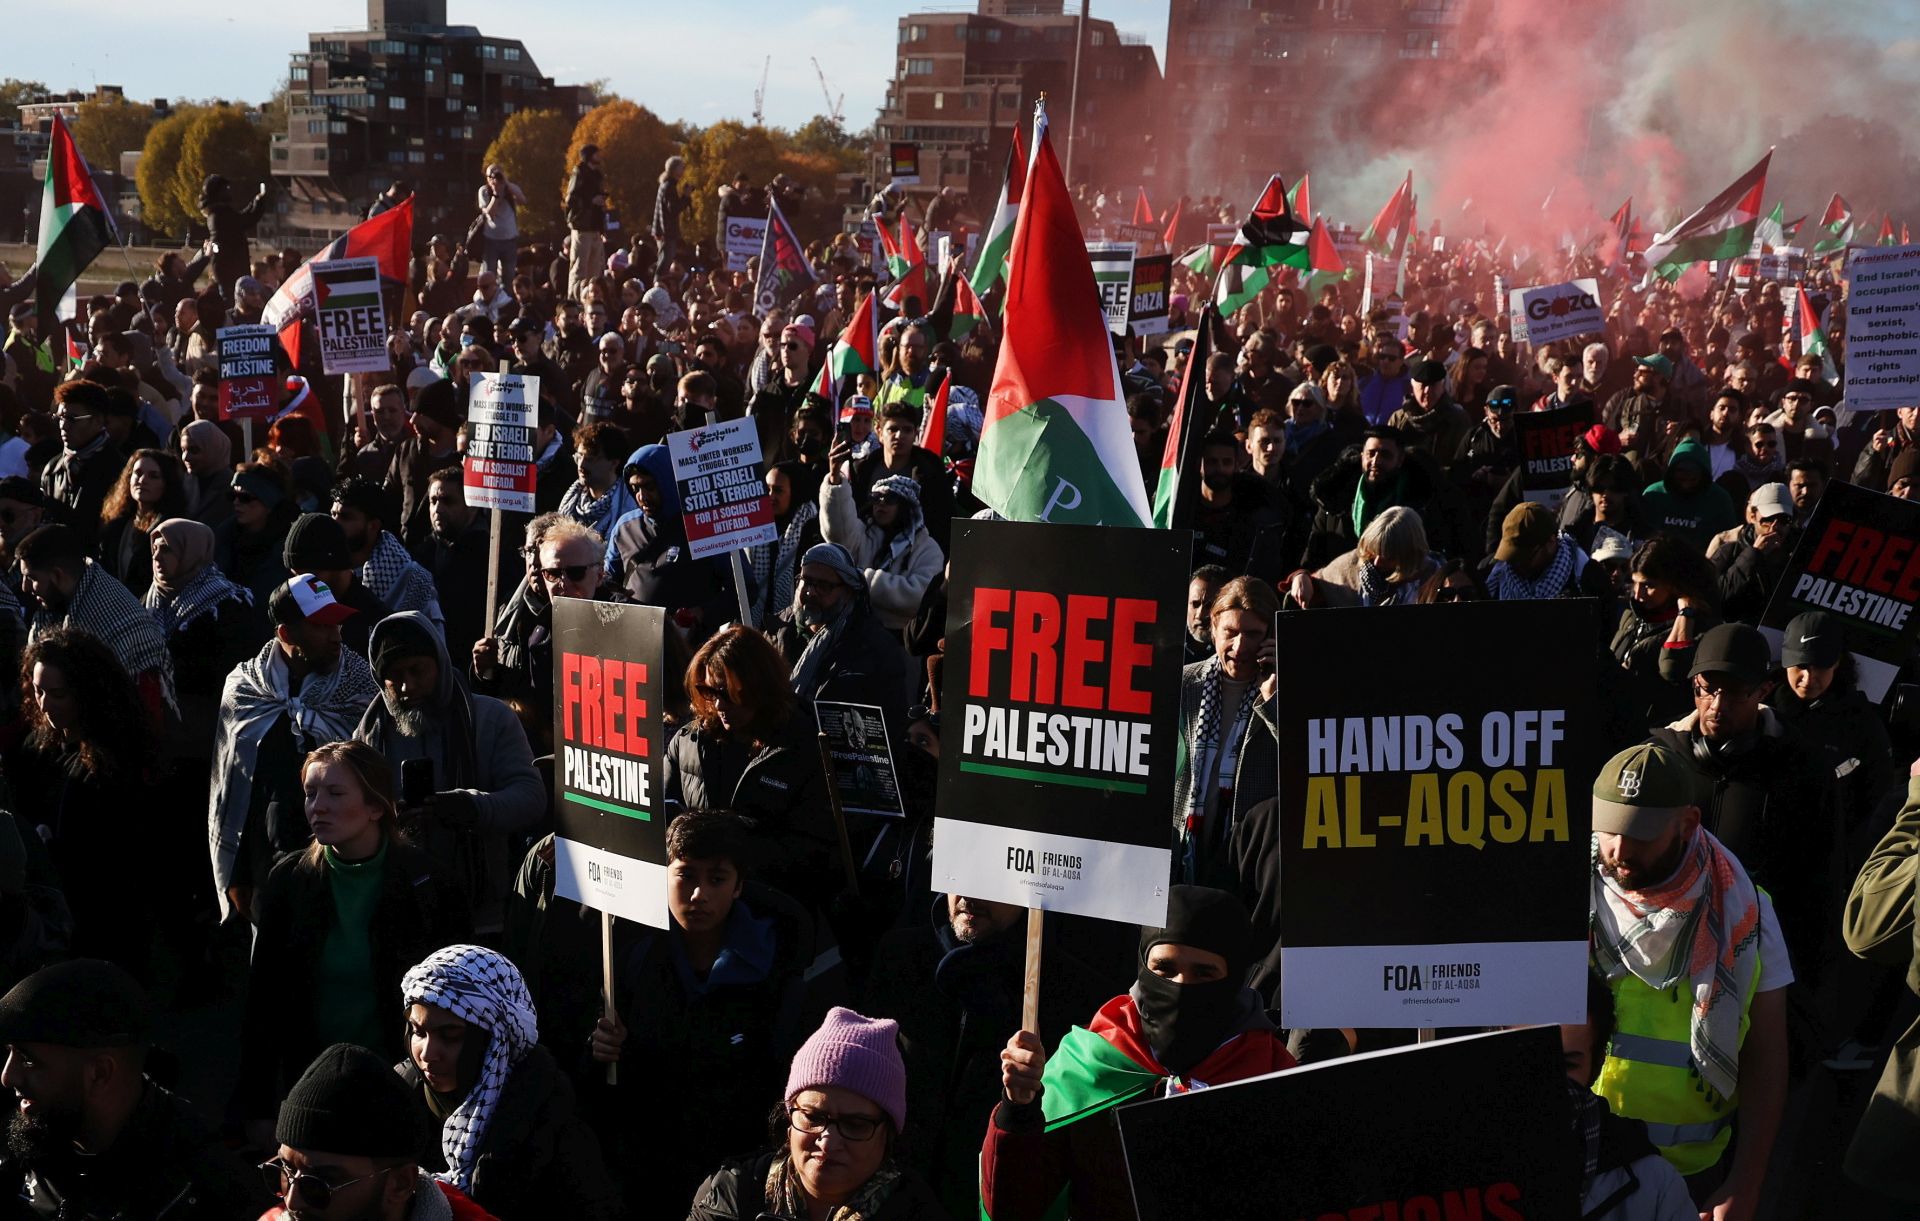 Lehet-e értelmes vitát folytatni a gázai helyzetről Nyugat-Európában?